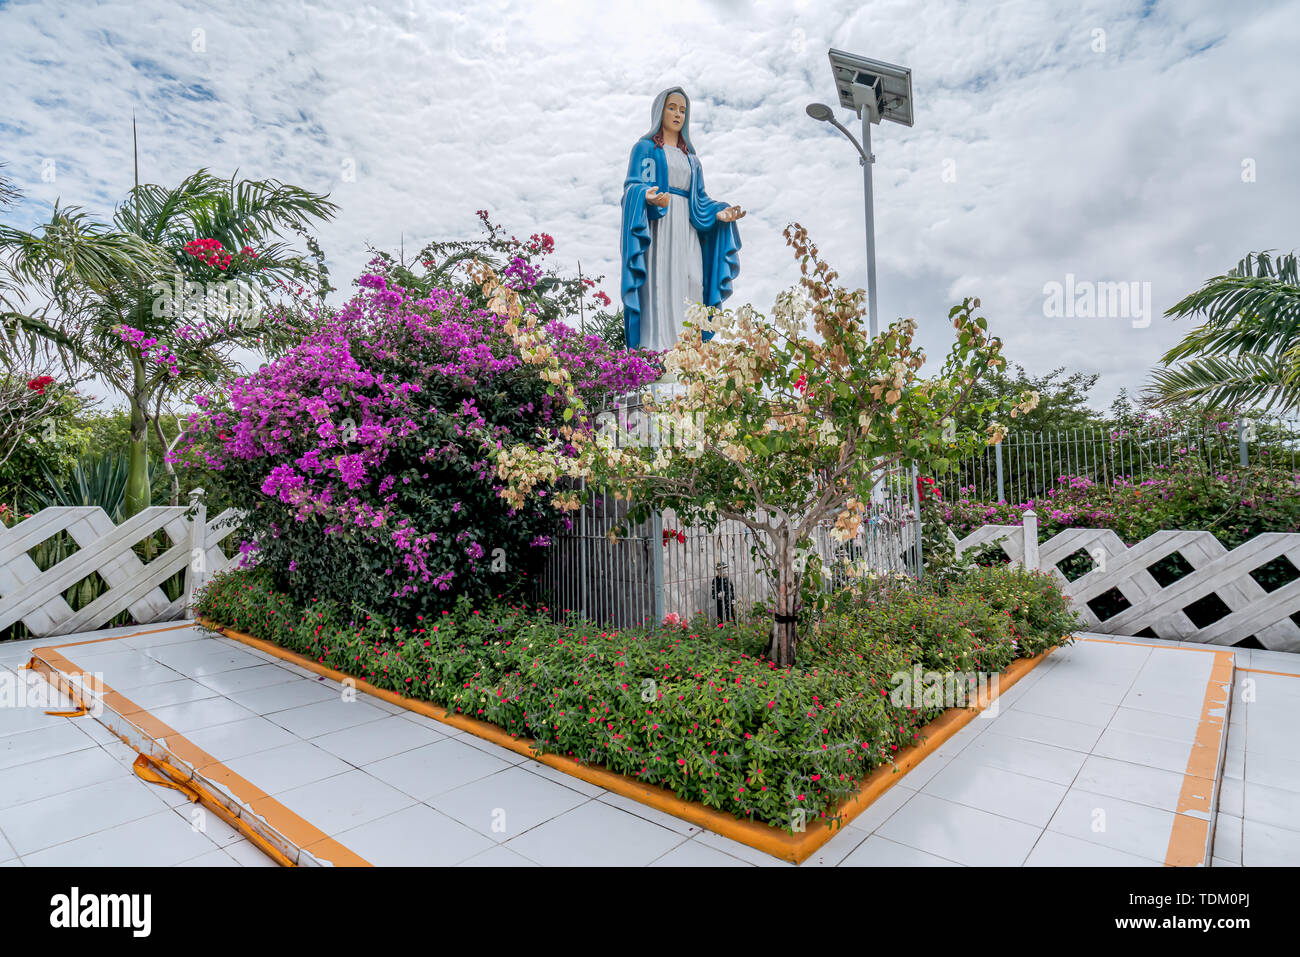 Gravatá, Serra das Russas, BR-232, Pernambuco, Brasile - Giugno, 2019: bellissima statua della Madonna della Grazia Maria Vergine, circondato da fiori. Foto Stock